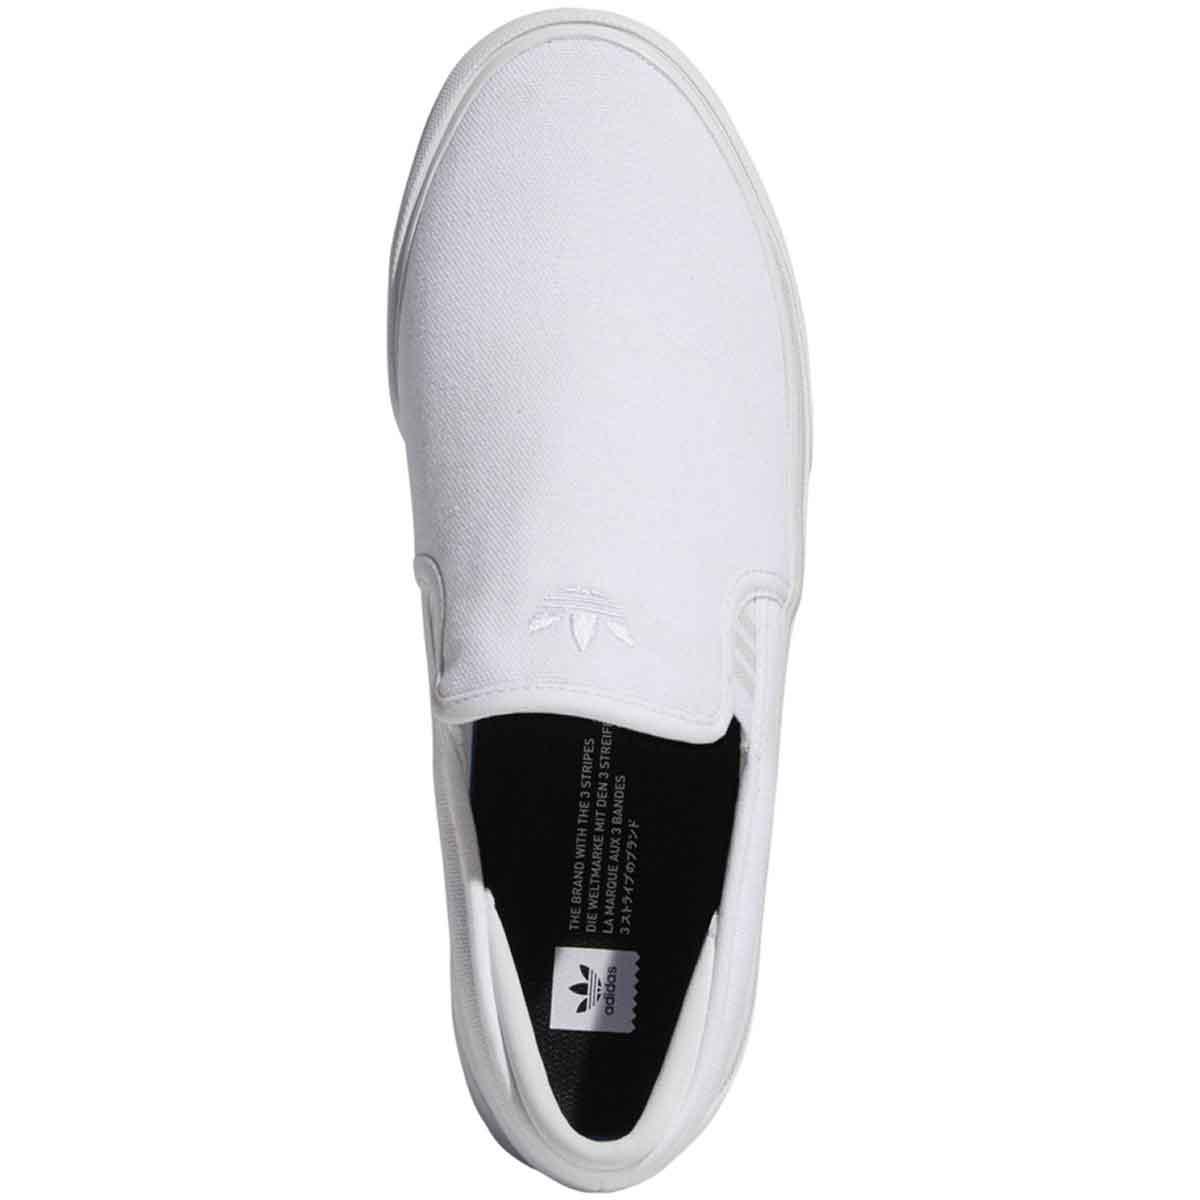 Adidas Sabalo Slip-on Skate Shoes, White/Grey/Black